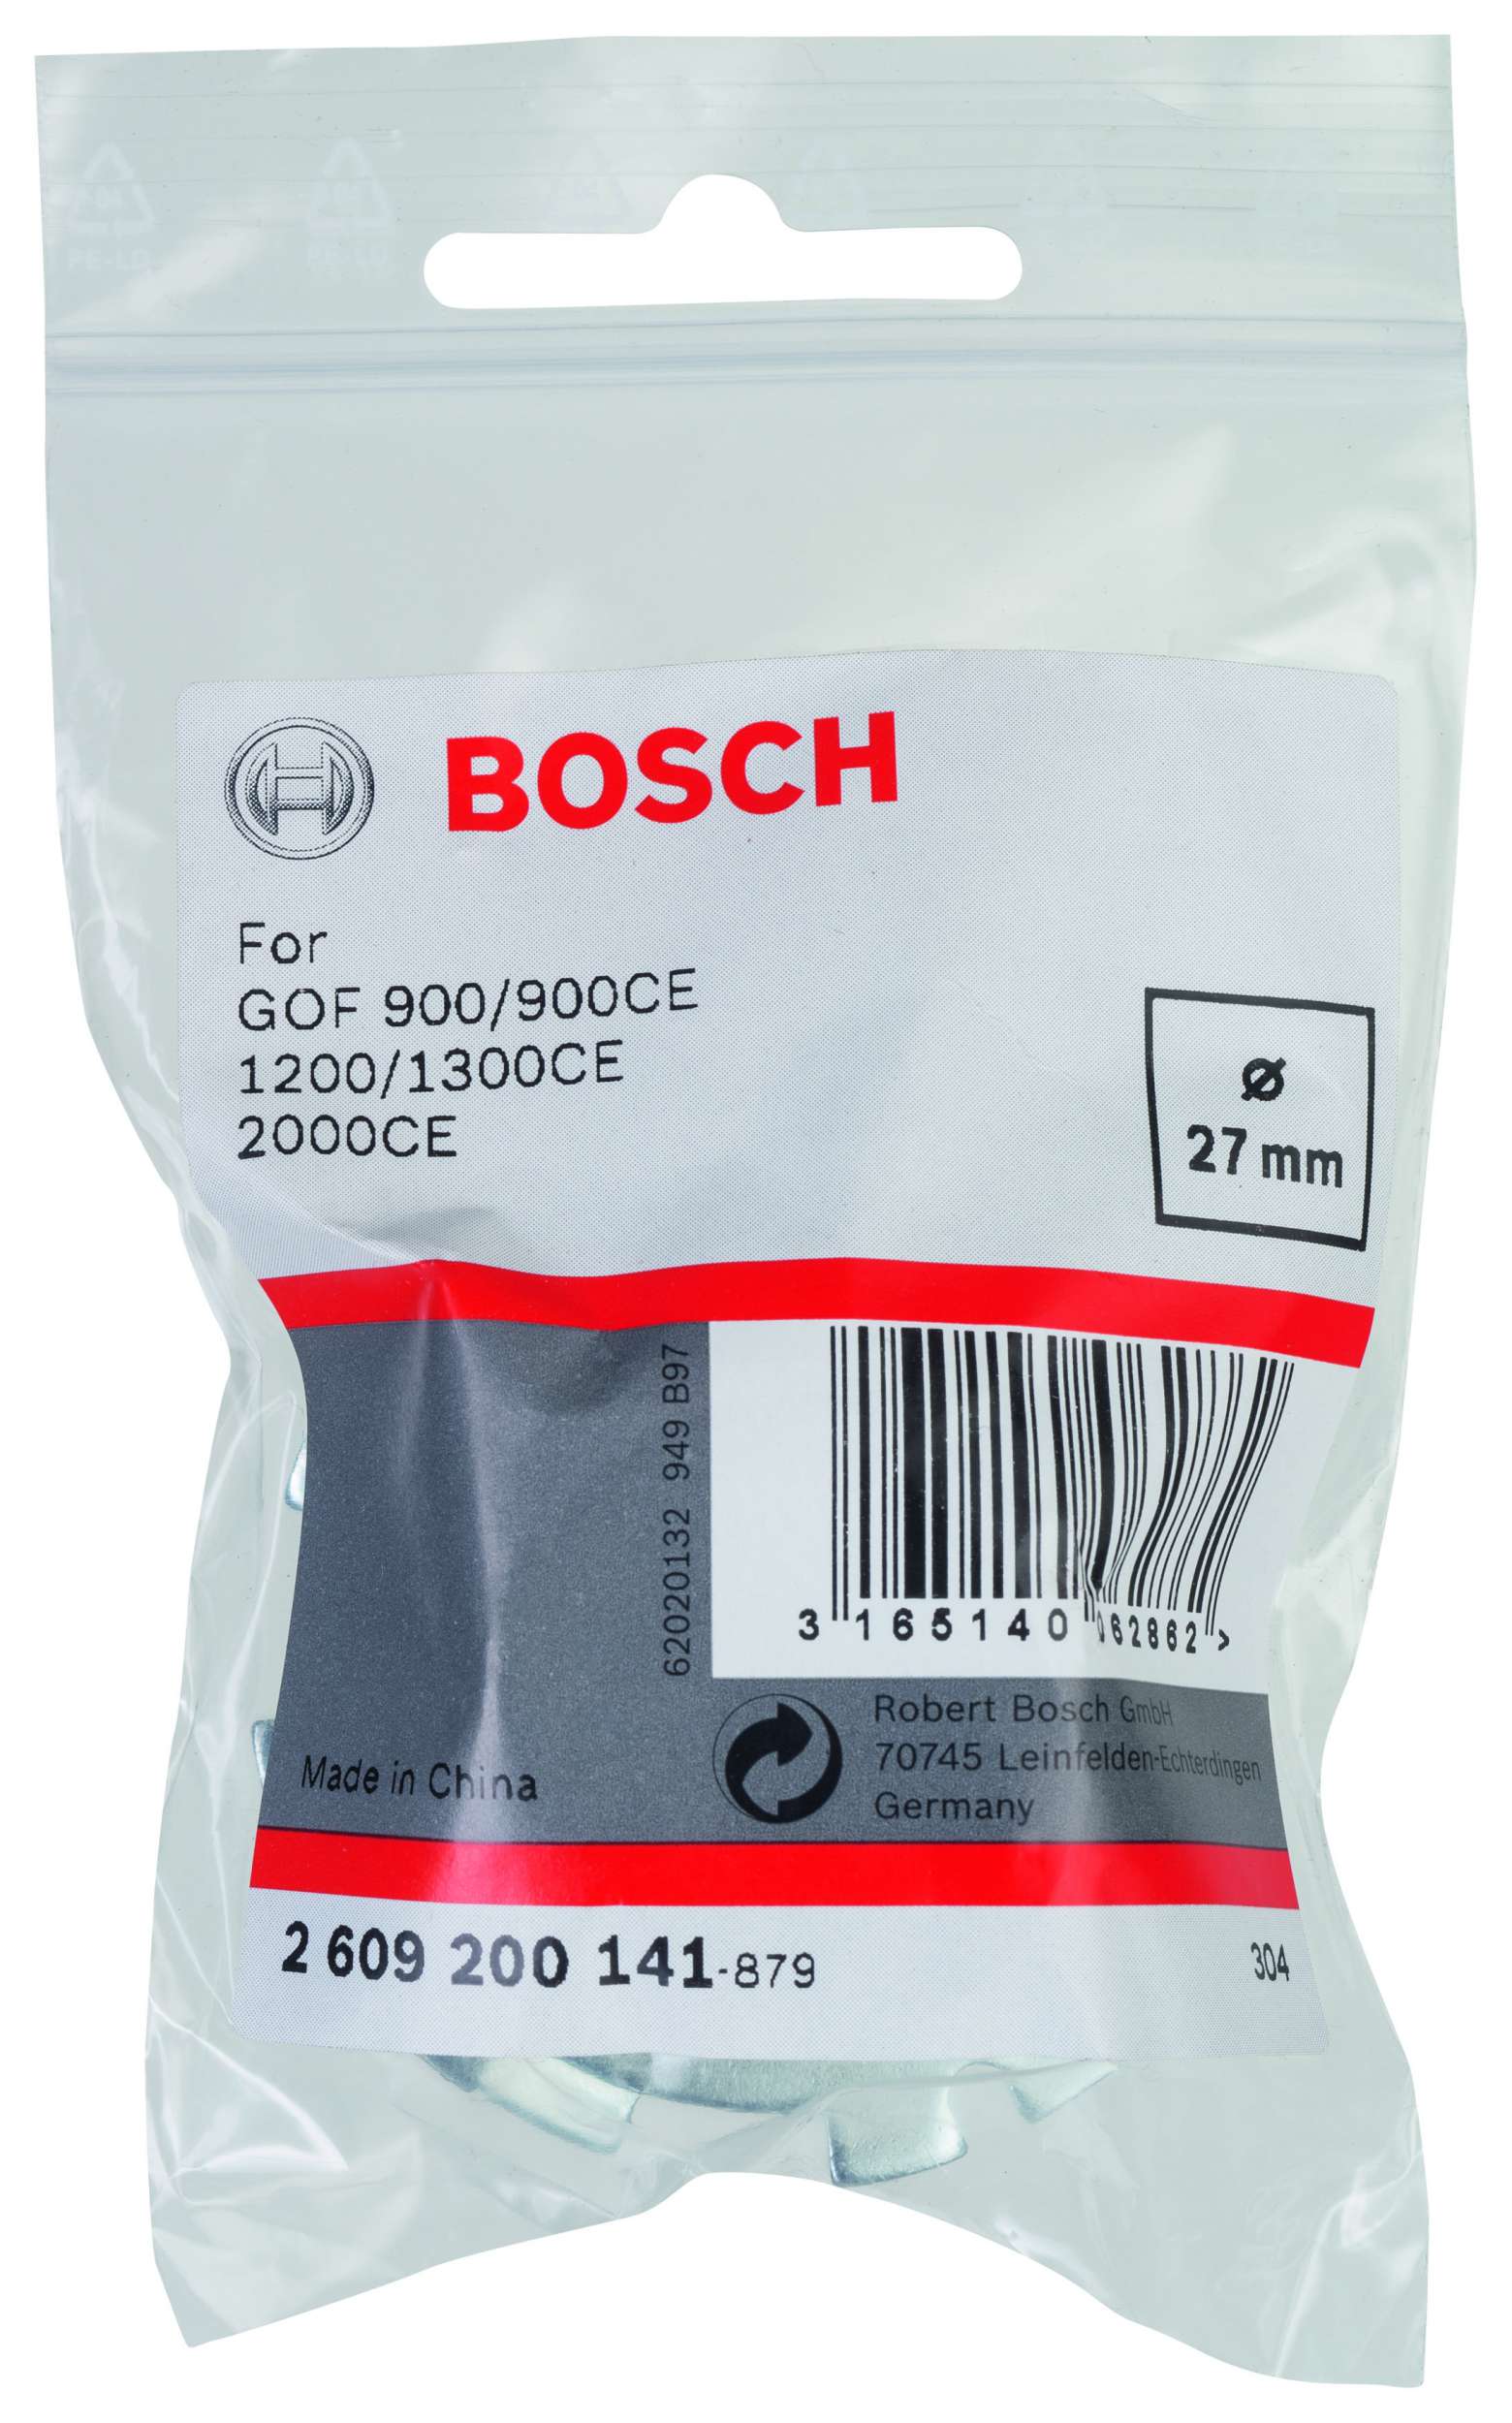 Bosch - Freze Kopyalama Sablonu 27 mm